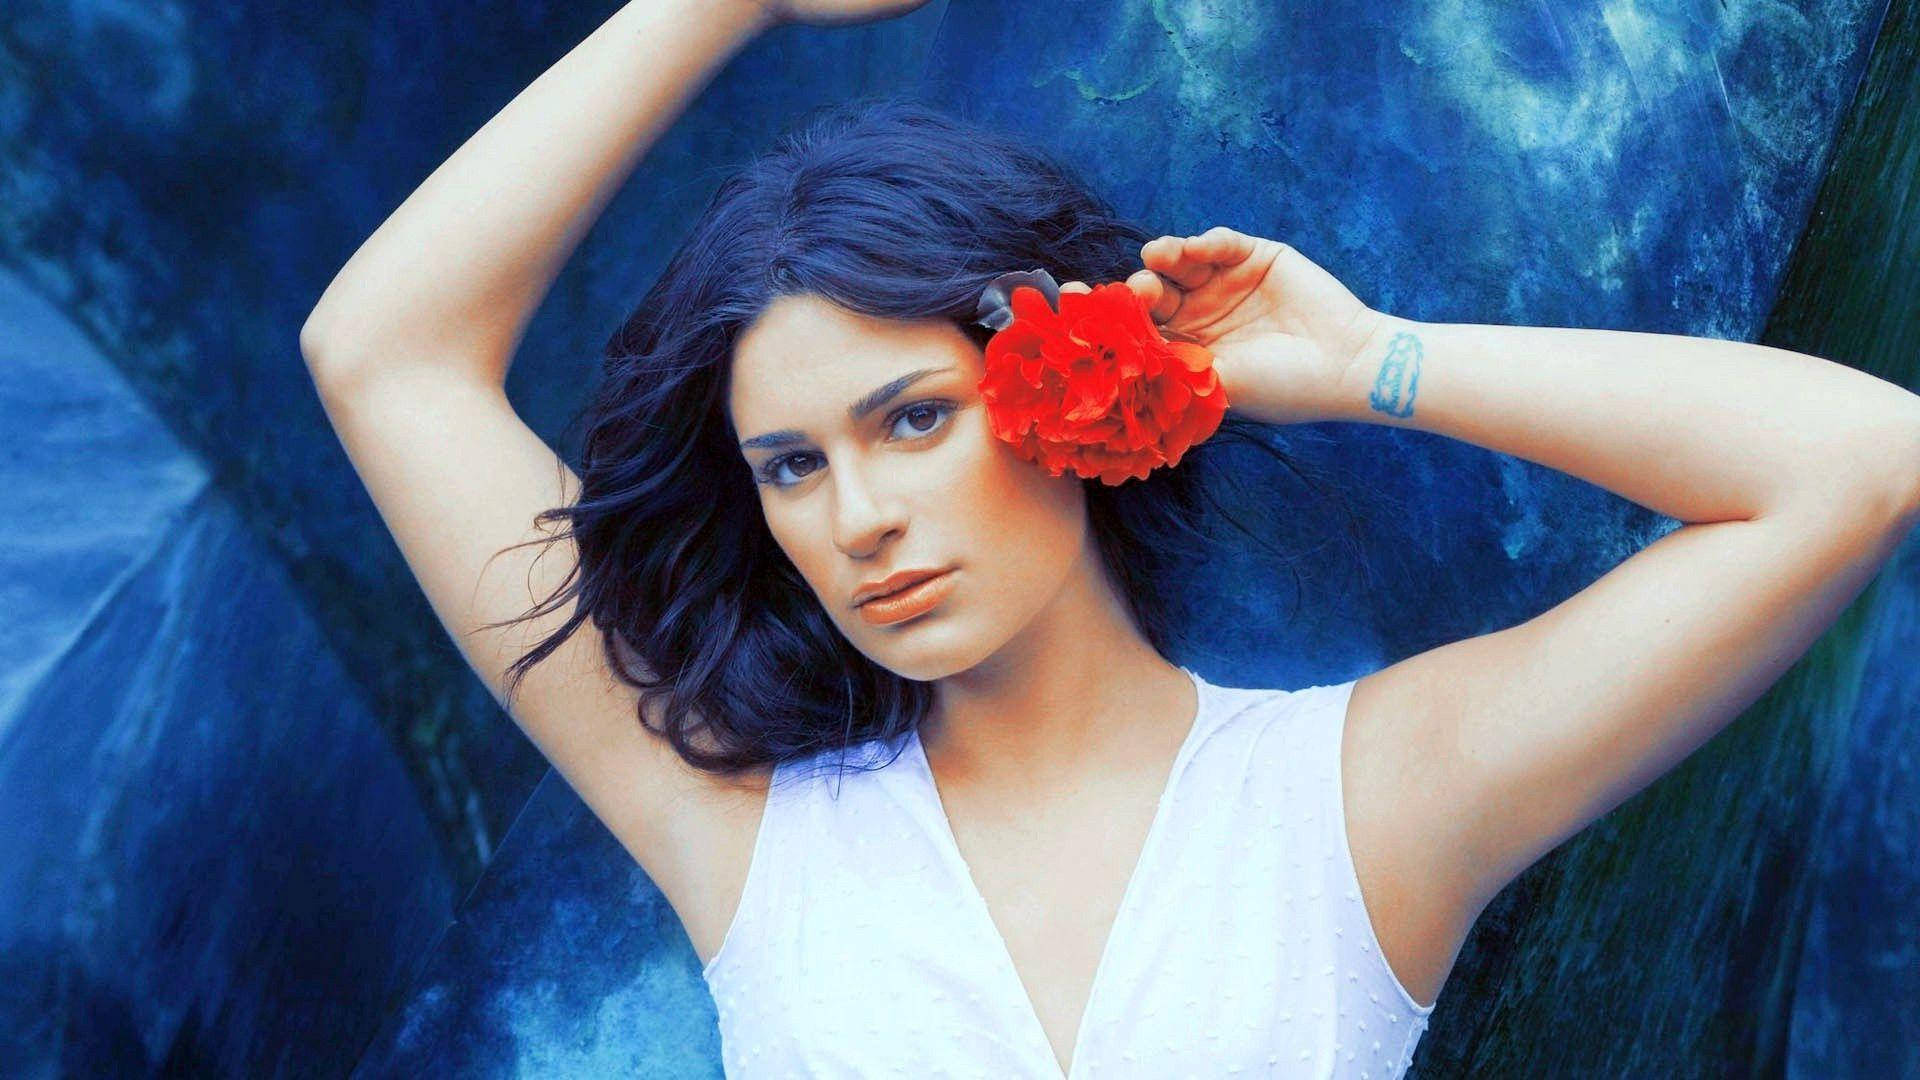 Lea Michele Red Flower On Ear Wallpaper